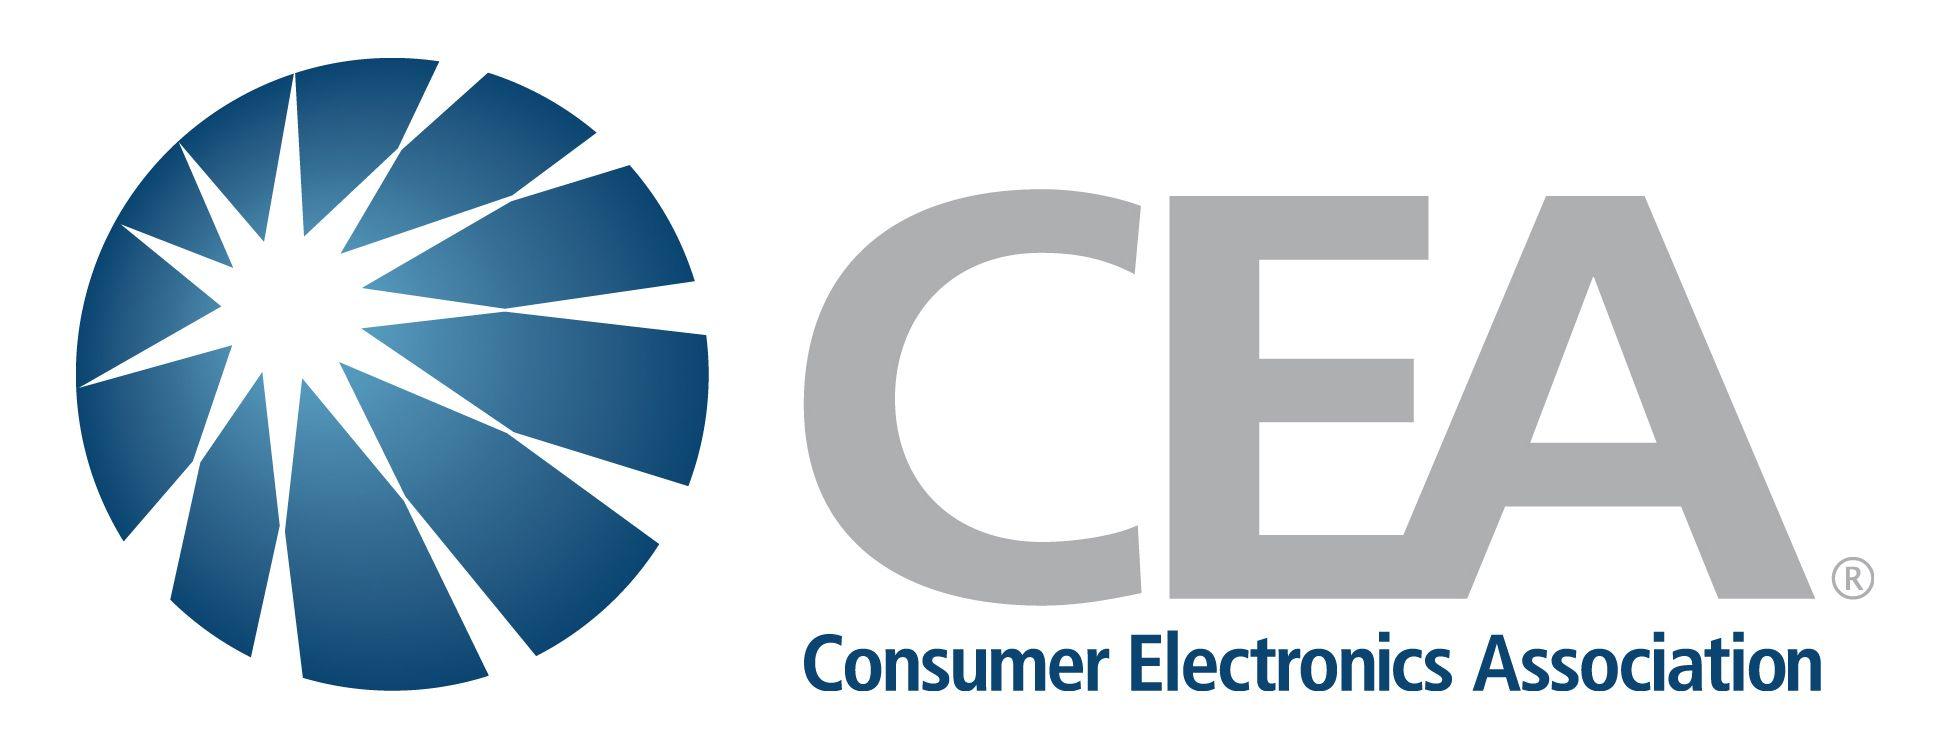 Cea Logo - CEA 101 CEA